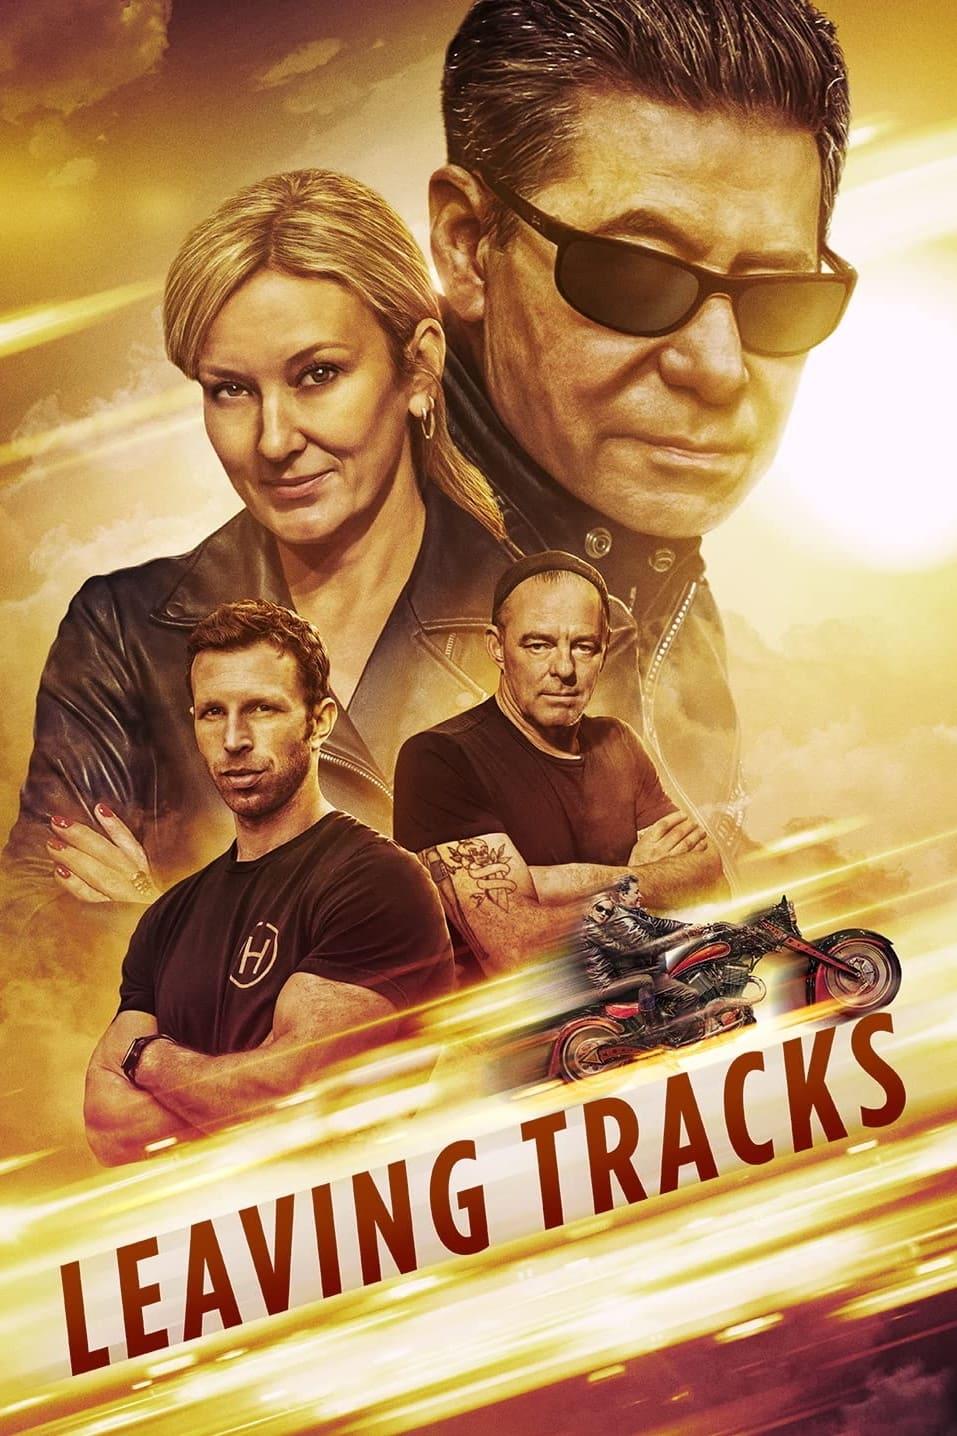 Leaving Tracks poster